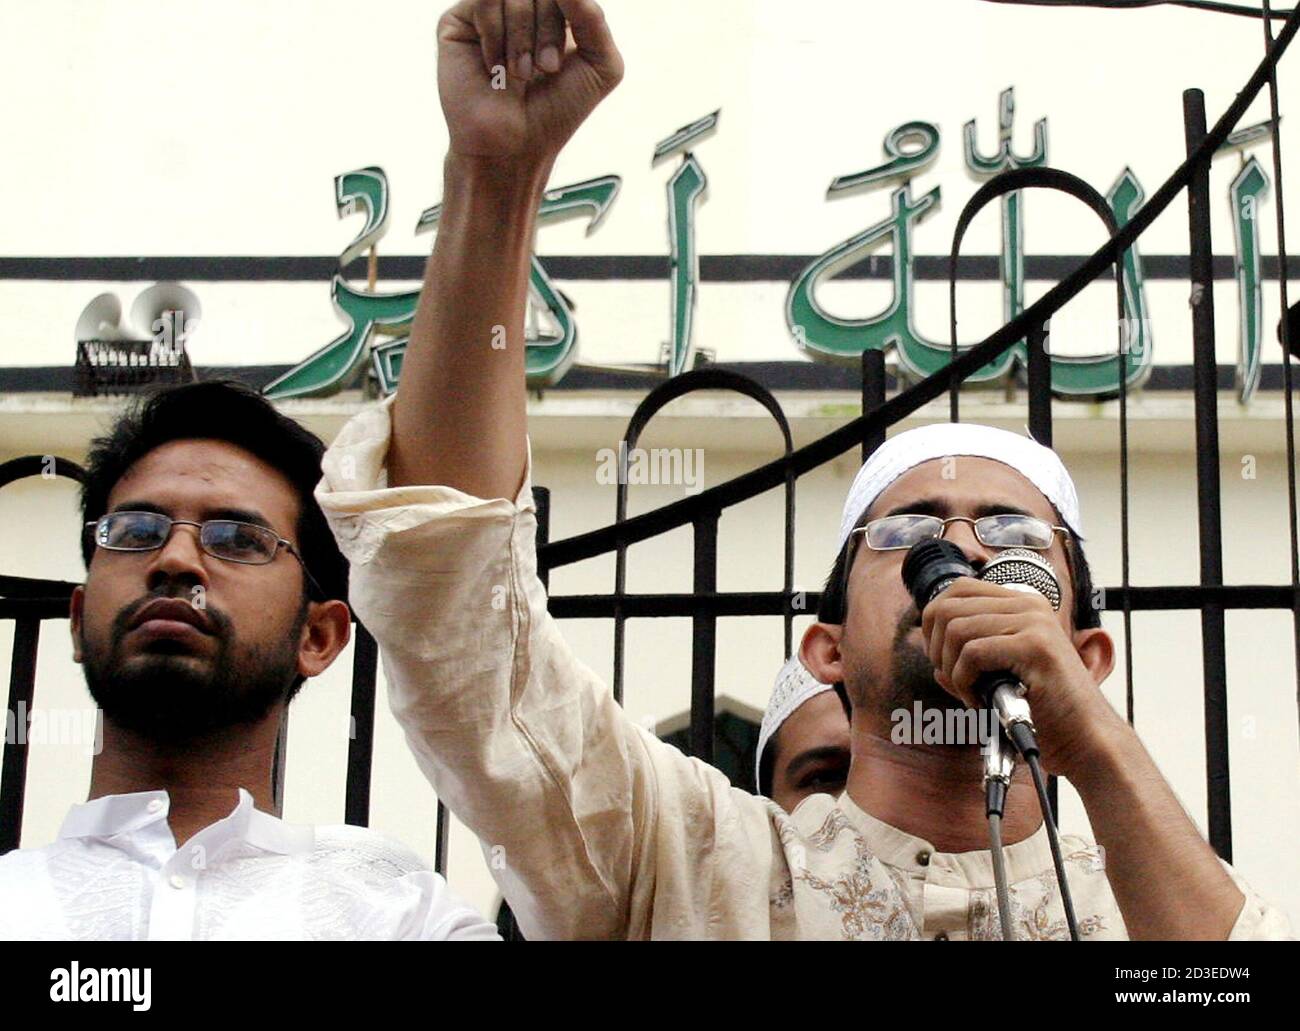 El líder islámico de Bangladesh se dirige a una manifestación fuera de la mezquita nacional durante una manifestación de protesta contra los recientes comentarios del congresista estadounidense, en Dhaka. Un líder islámico bangladeshí se dirige a una manifestación fuera de la mezquita nacional, durante una manifestación de protesta contra las recientes observaciones hechas por un congresista estadounidense, en Dhaka, el 29 de julio de 2005. Un congresista estadounidense que sugirió que Estados Unidos podría considerar bombardear sitios sagrados musulmanes, incluida la Meca, ha formulado demandas de disculpas de los grupos musulmanes y árabes de Estados Unidos, pero rechazó reunirse con una organización líder. REUTERS/Rafiqur Rahman Foto de stock